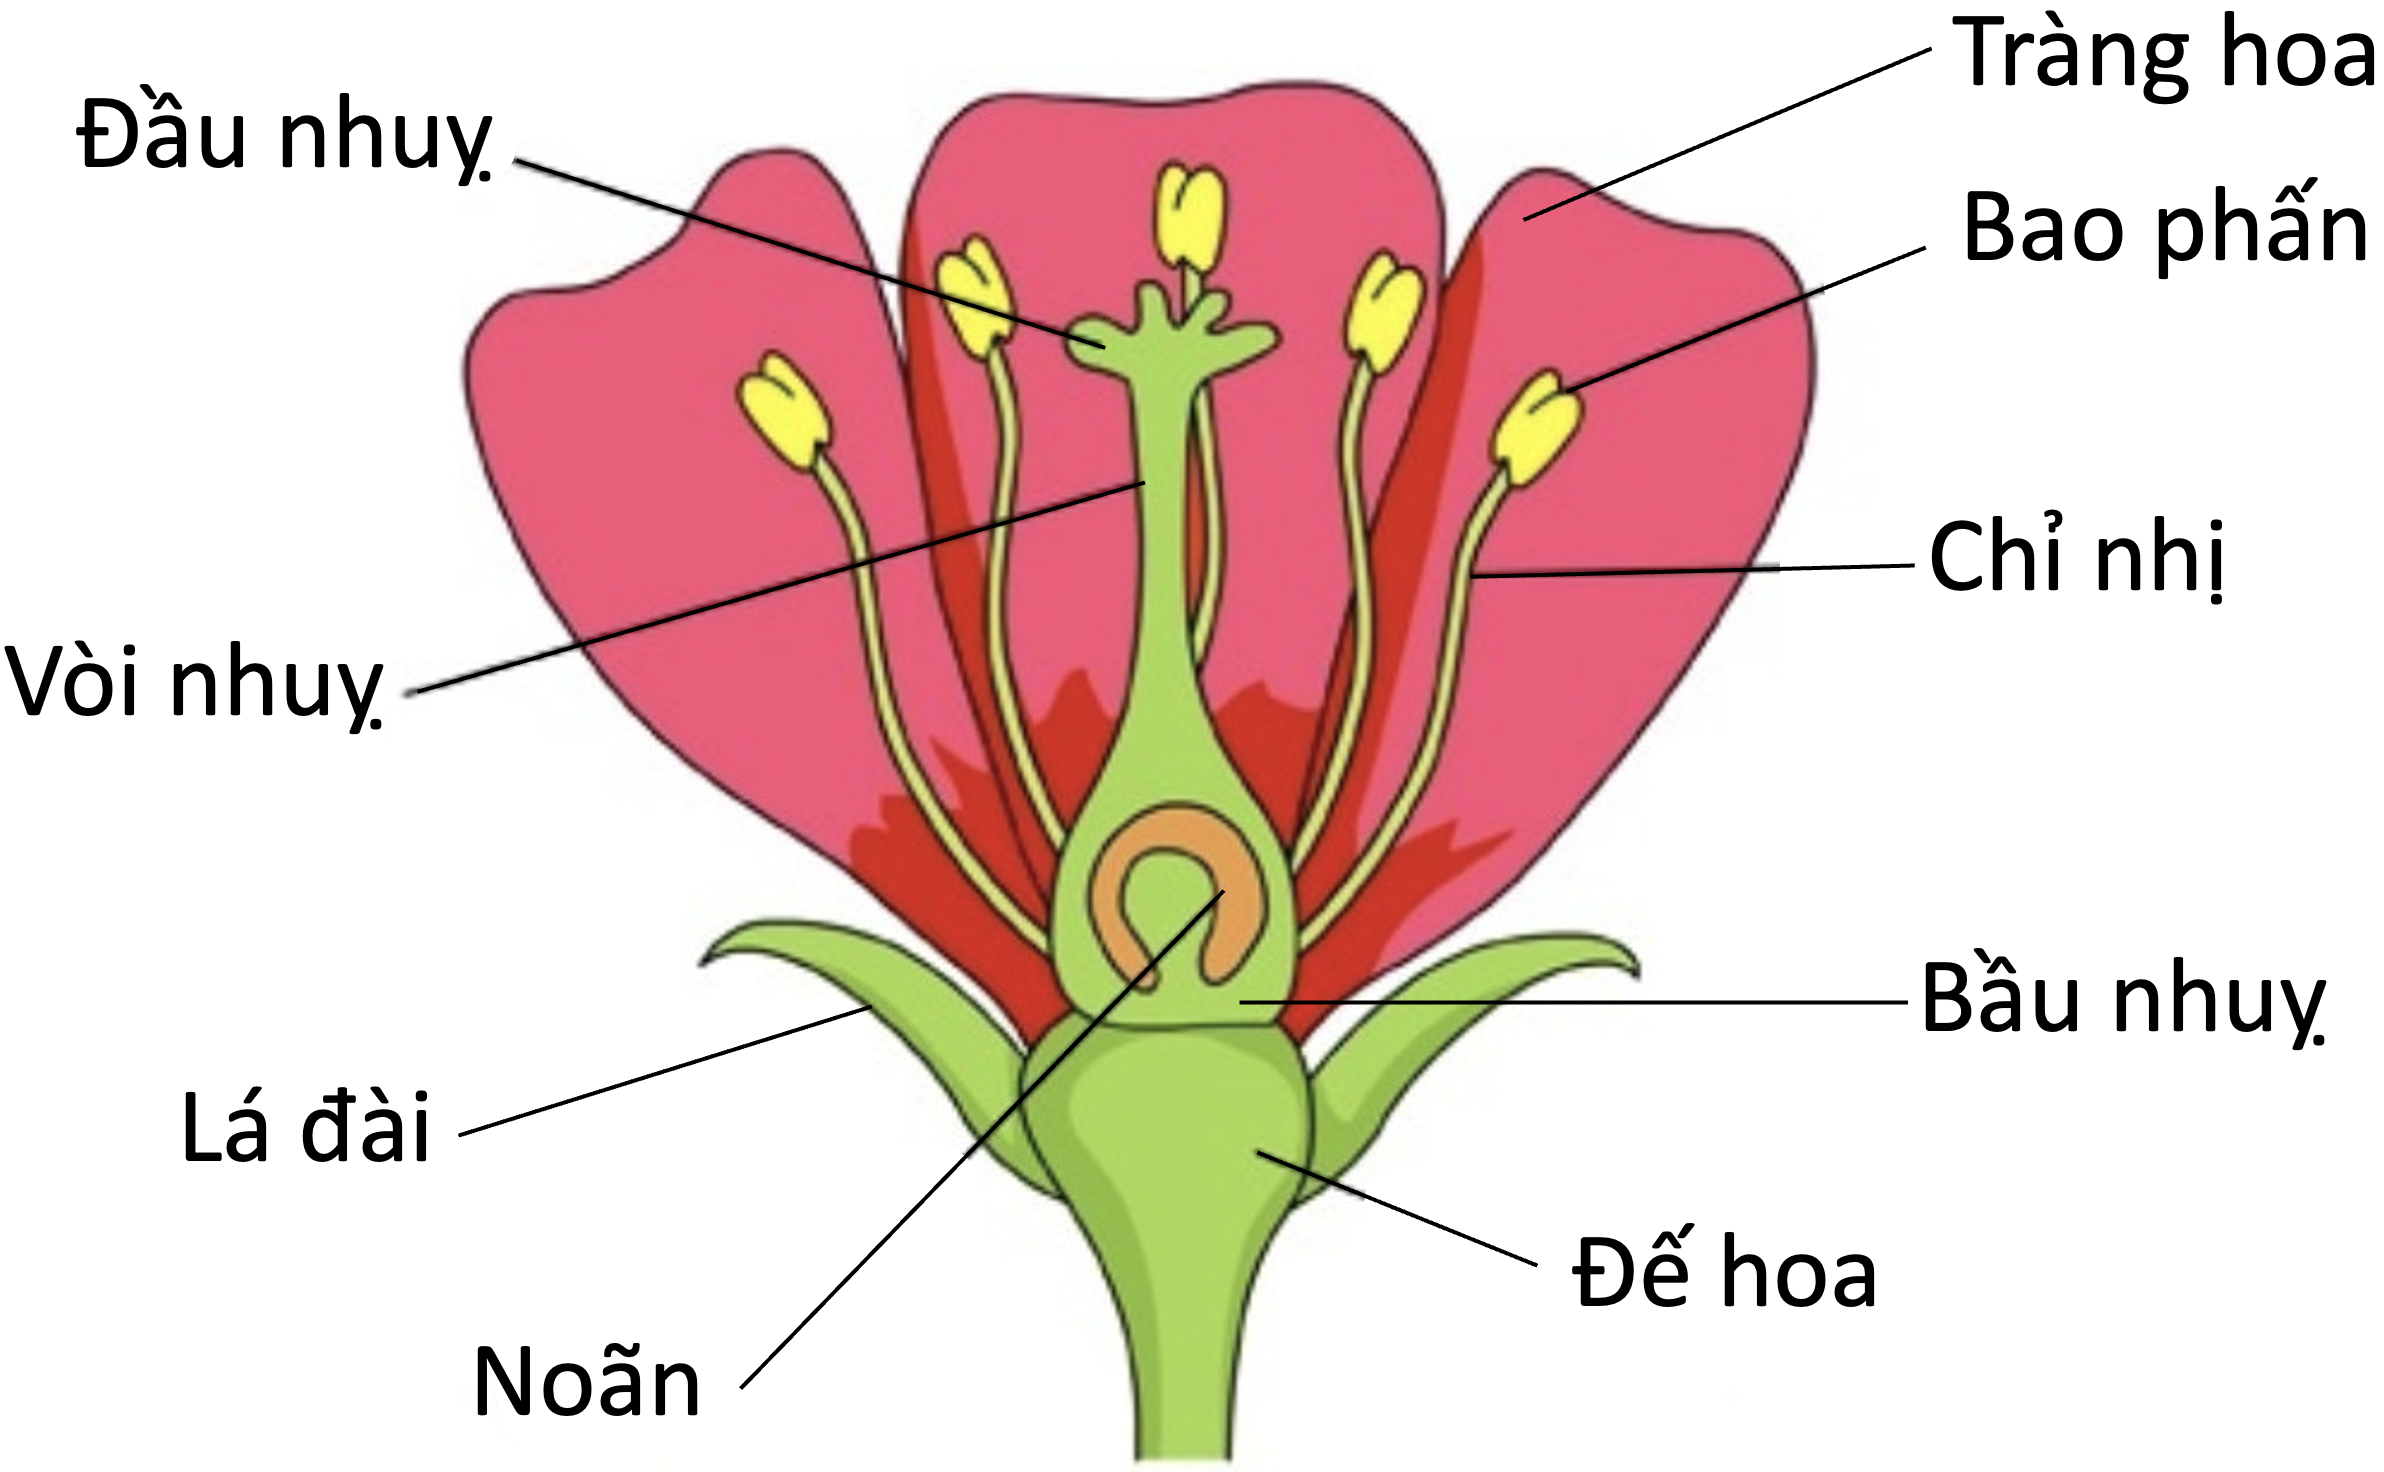 Plants kinds. Строение цветка чашелистик пыльник завязь. Структура цветка. Строение цветов. Анатомия цветка.